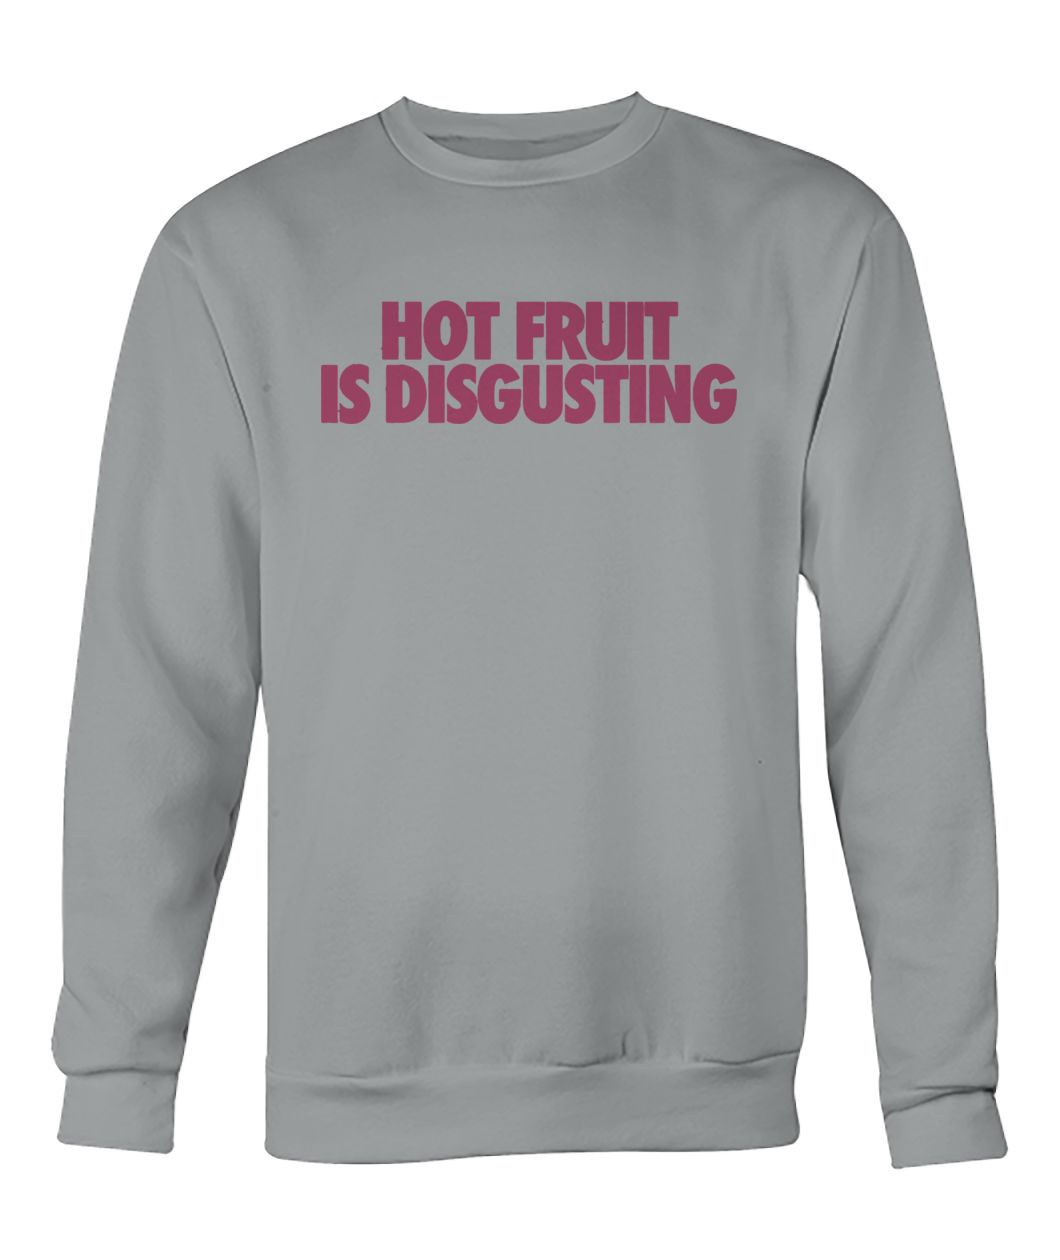 Hot fruit is disgusting crew neck sweatshirt